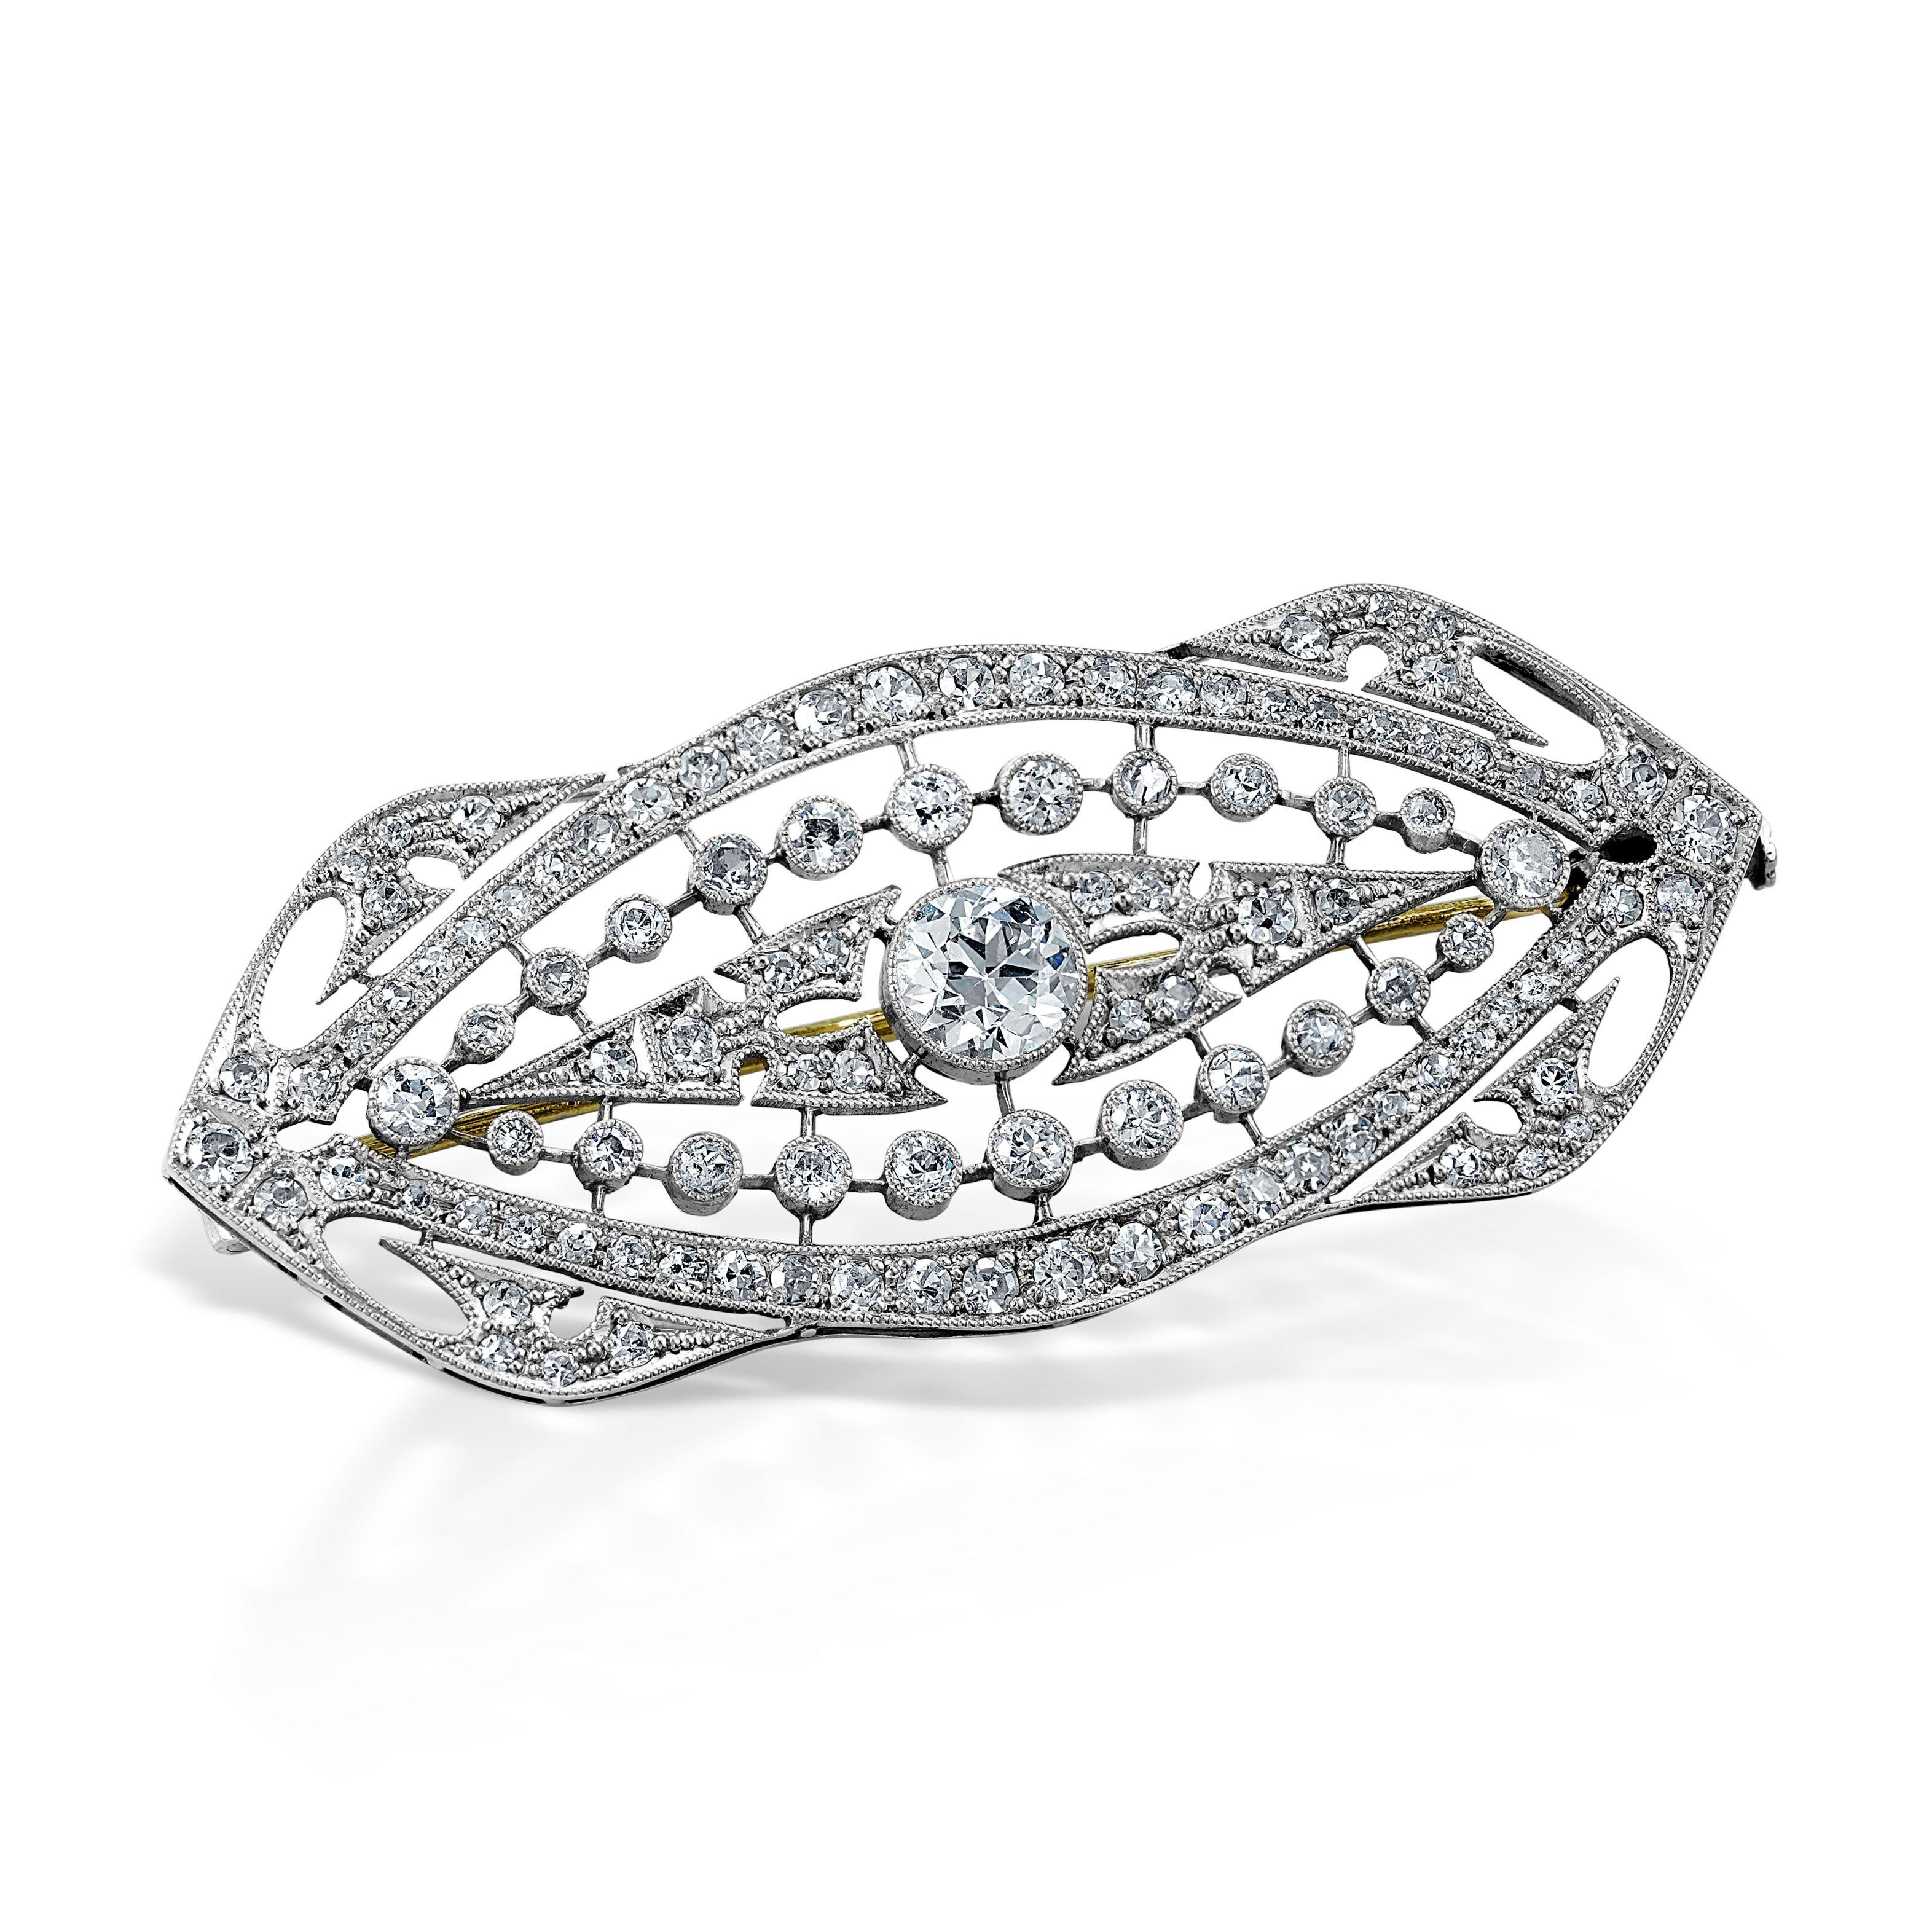 Tout simplement magnifique ! Broche Art Nouveau en or blanc et diamants finement détaillée. Magnifiquement réalisé à la main avec des détails migraineux en or blanc 18 carats. Serti à la main de 109 diamants d'un poids total d'environ 2,25 carats.